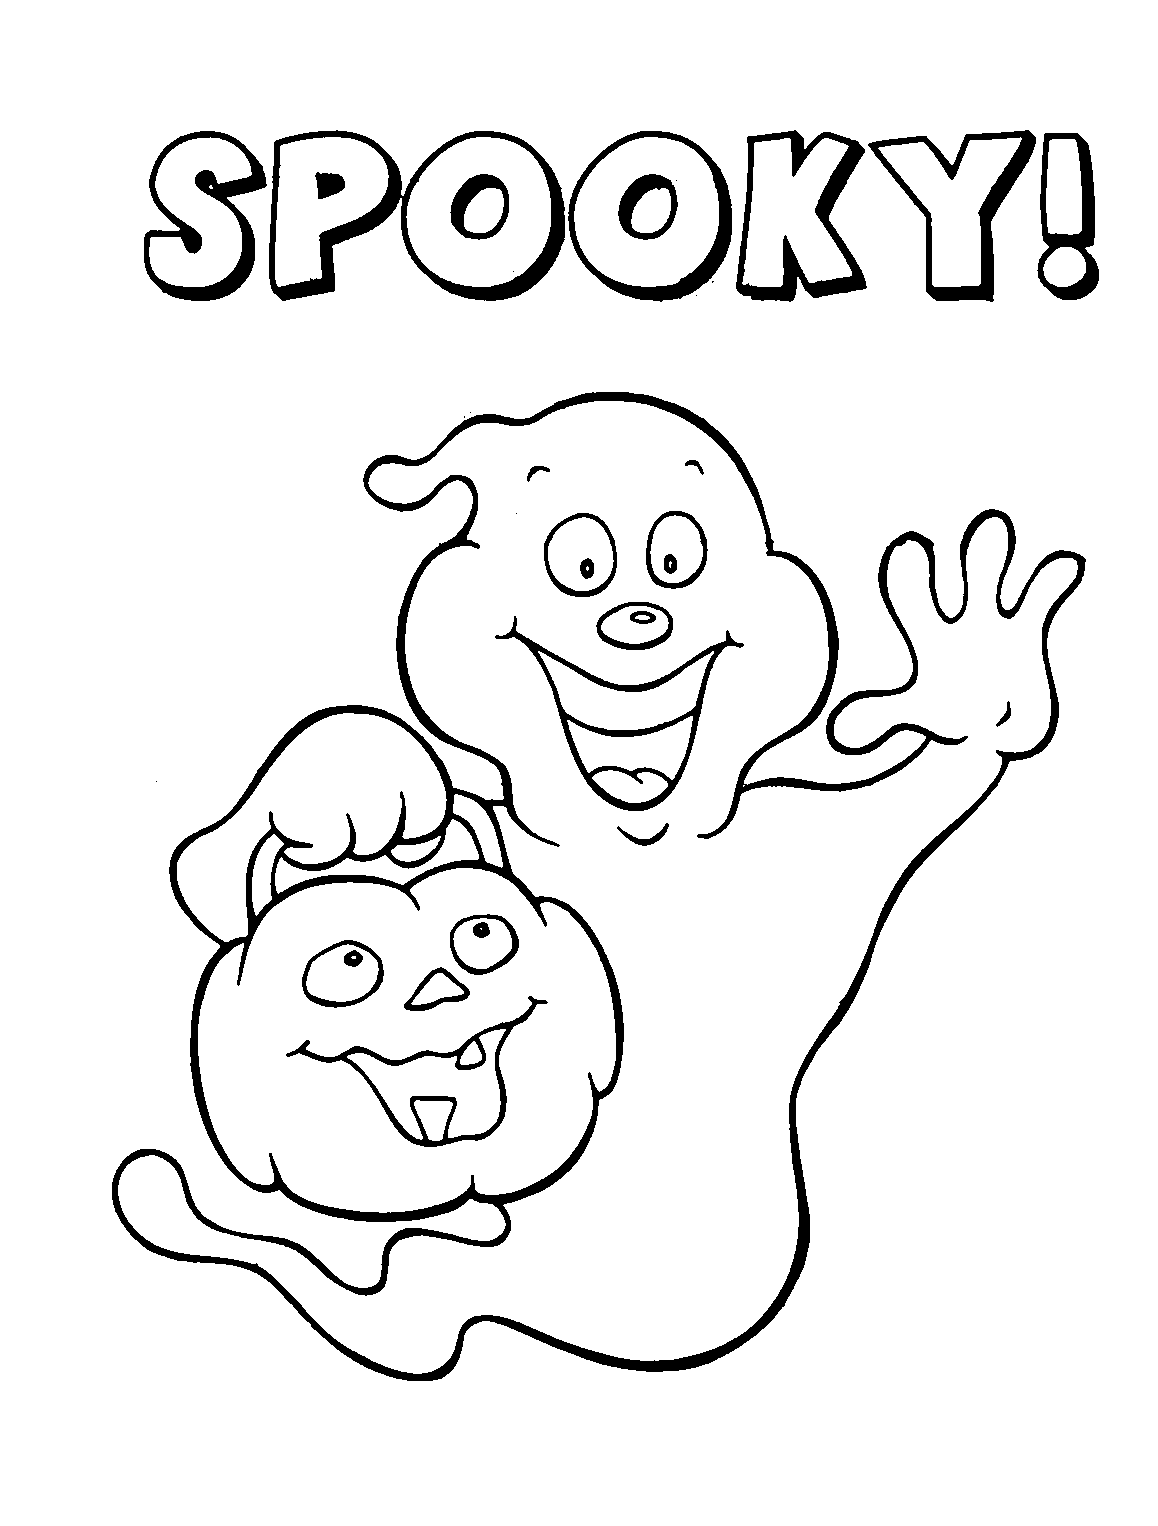 Free Printable Halloween For Kids